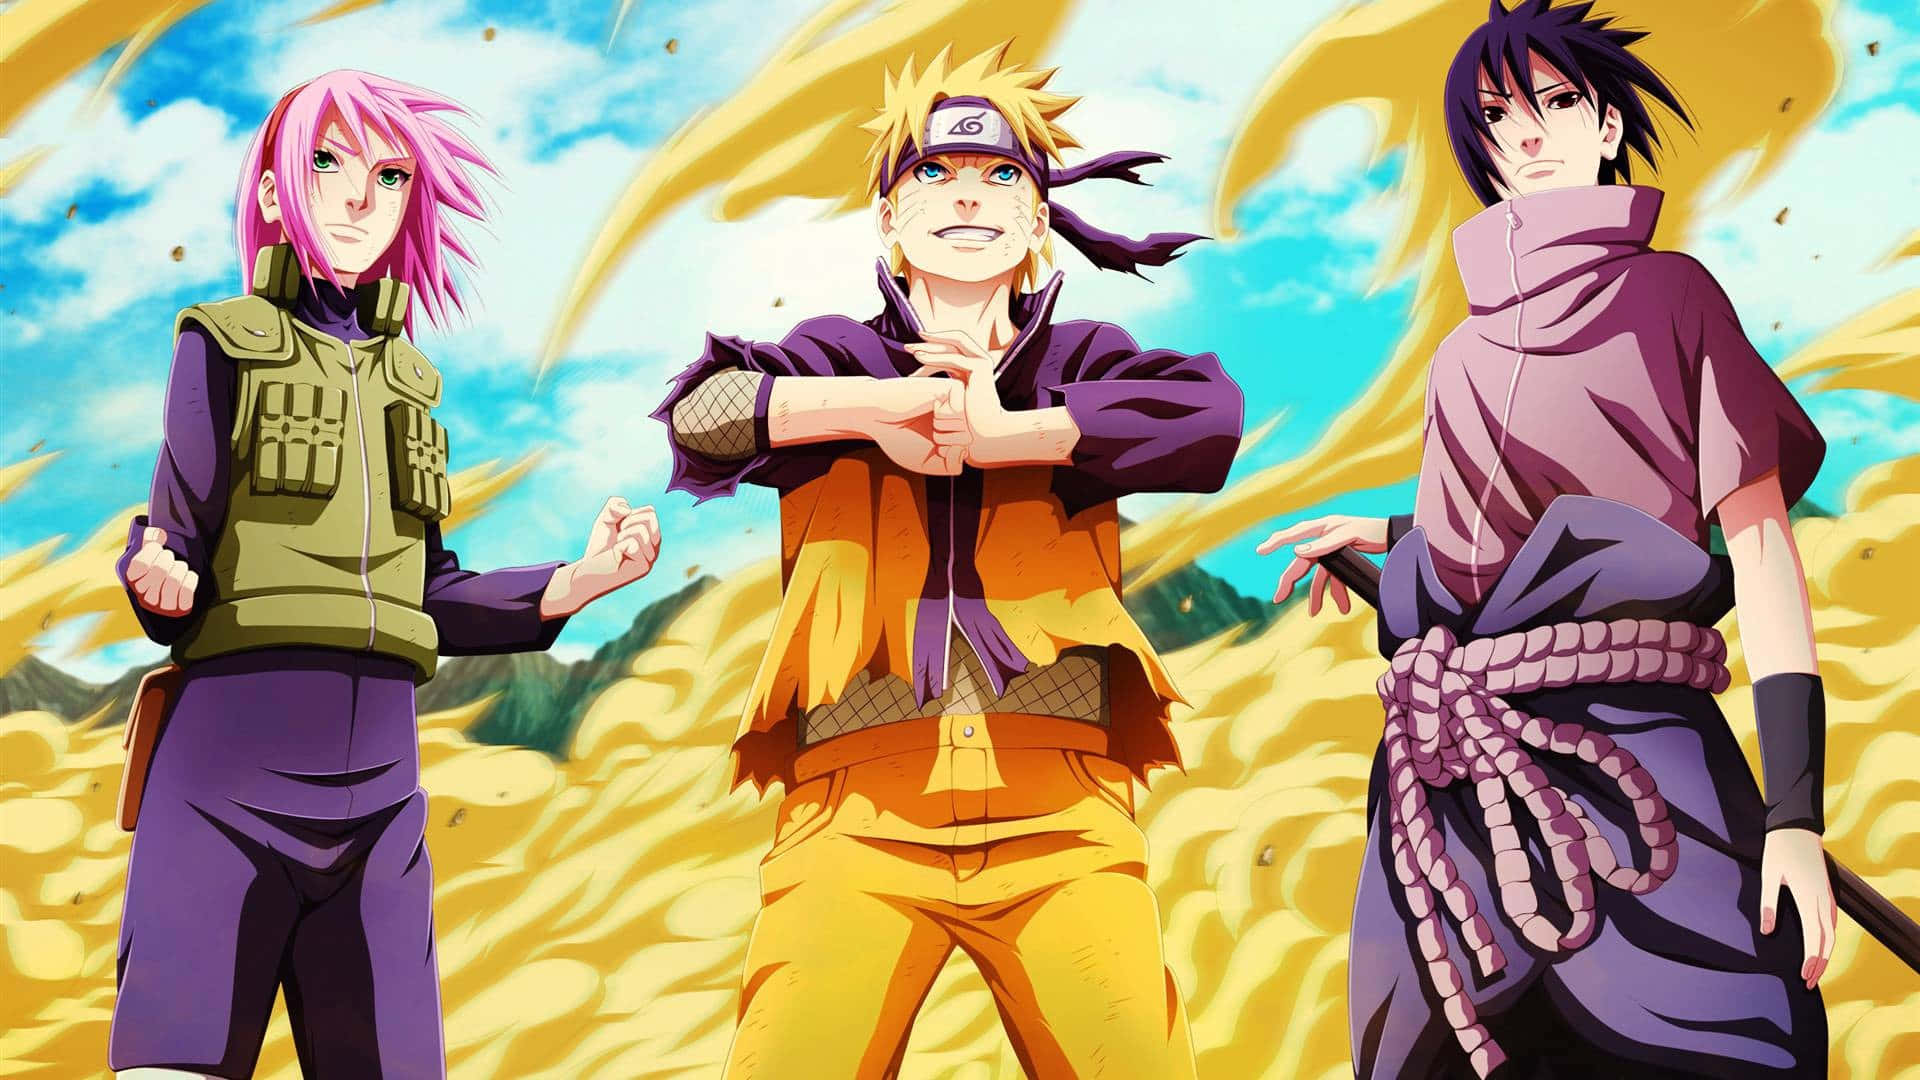 Ilteam 7 Di Naruto Si Mantiene Forte, Rappresentando Con Orgoglio L'iconica Villaggio Della Foglia. Sfondo